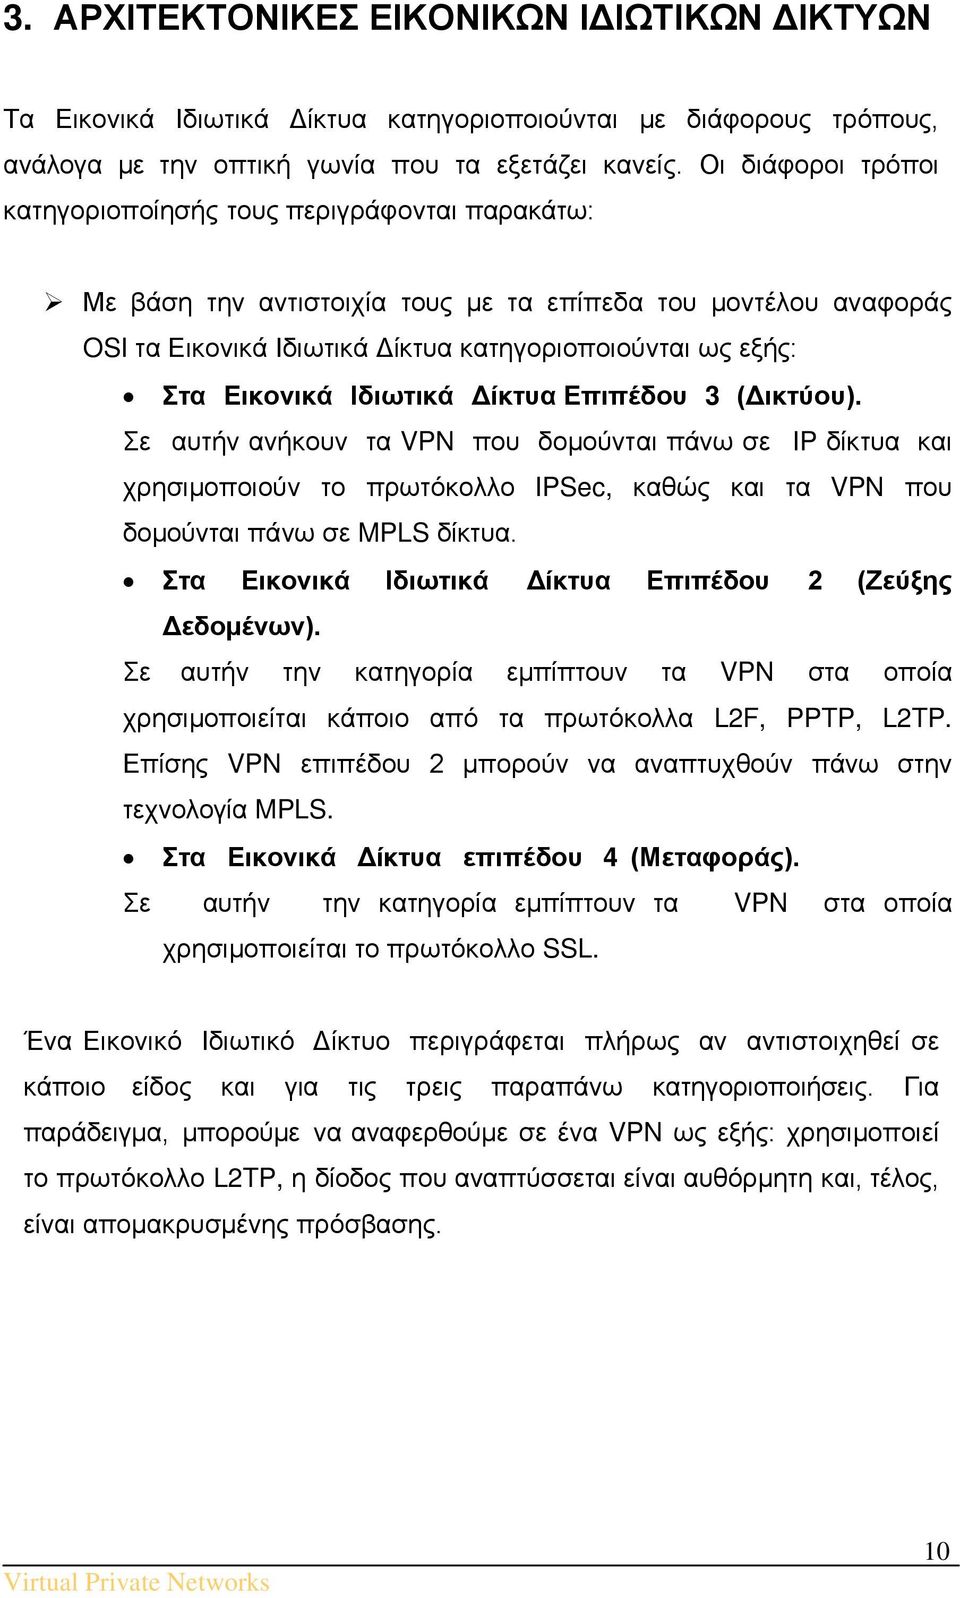 Εικονικά Ιδιωτικά Δίκτυα Επιπέδου 3 (Δικτύου). Σε αυτήν ανήκουν τα VPN που δομούνται πάνω σε IP δίκτυα και χρησιμοποιούν το πρωτόκολλο IPSec, καθώς και τα VPN που δομούνται πάνω σε MPLS δίκτυα.